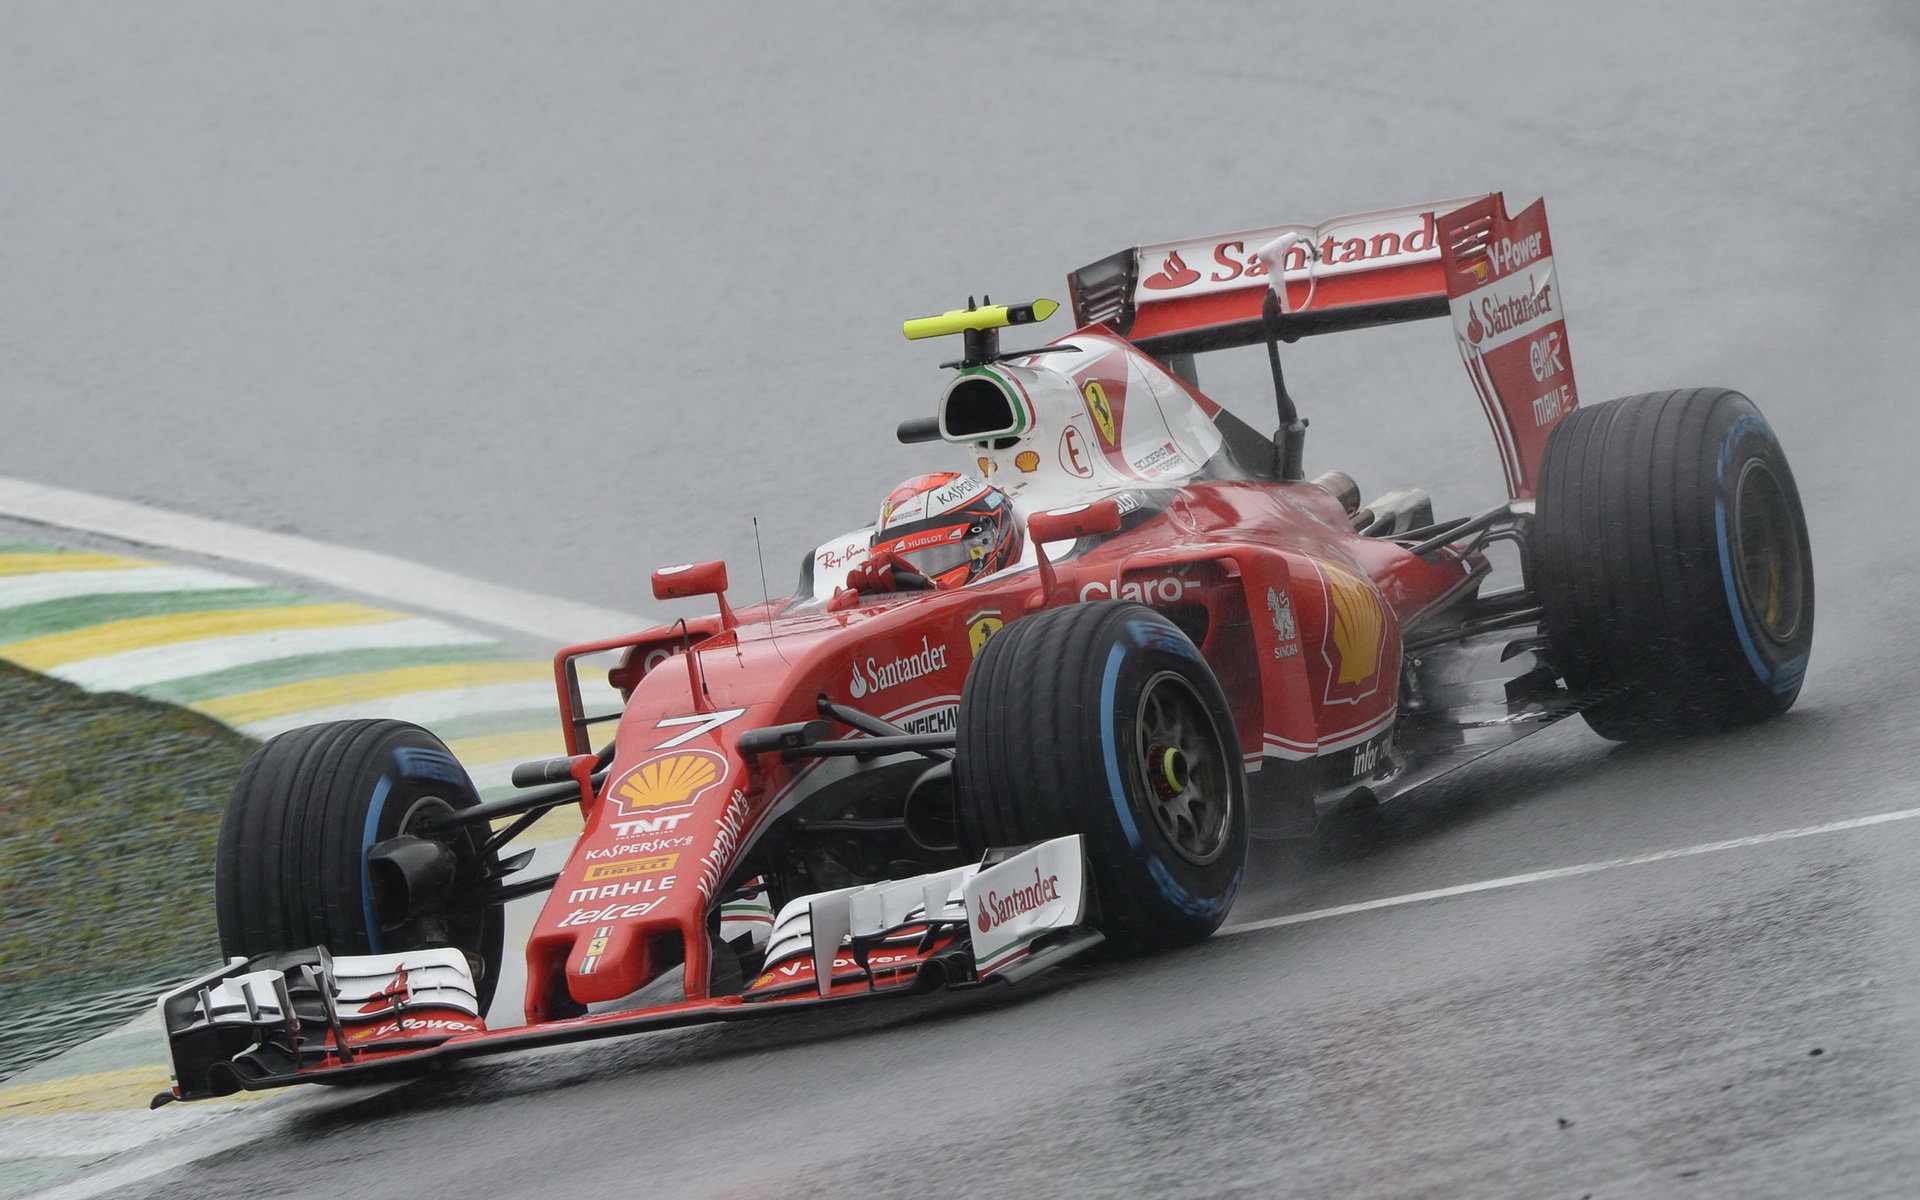 Kimi Räikkönen počas deštivého závodu v Brazílii